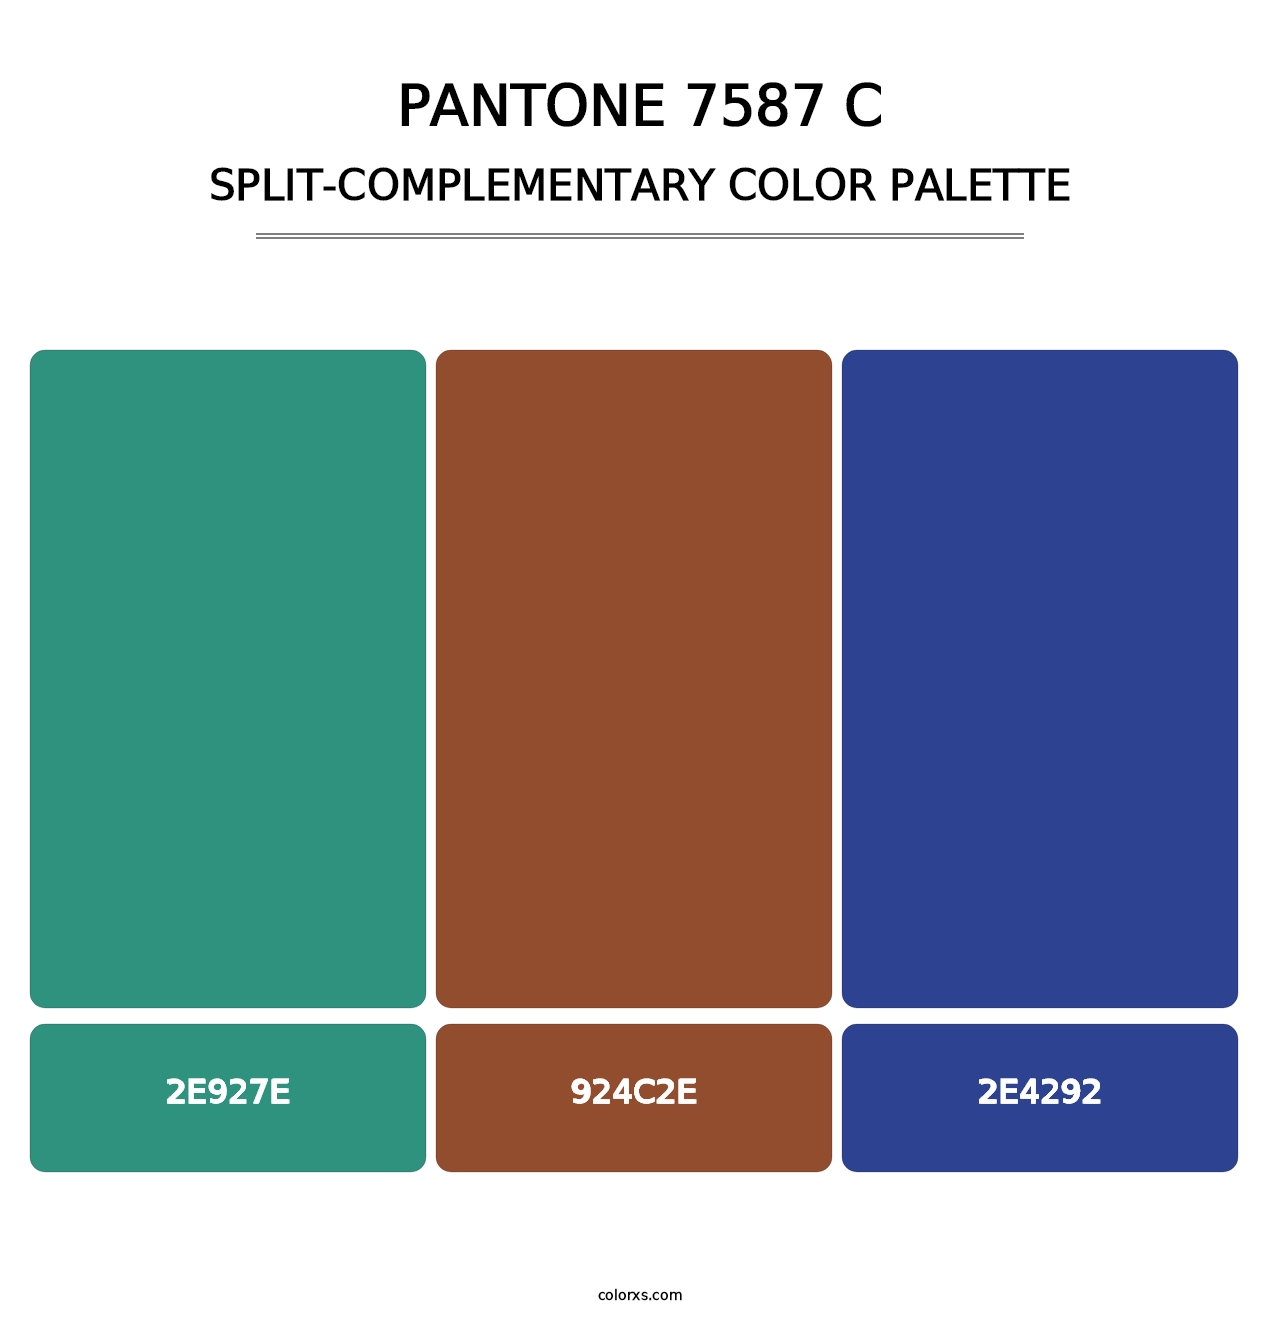 PANTONE 7587 C - Split-Complementary Color Palette